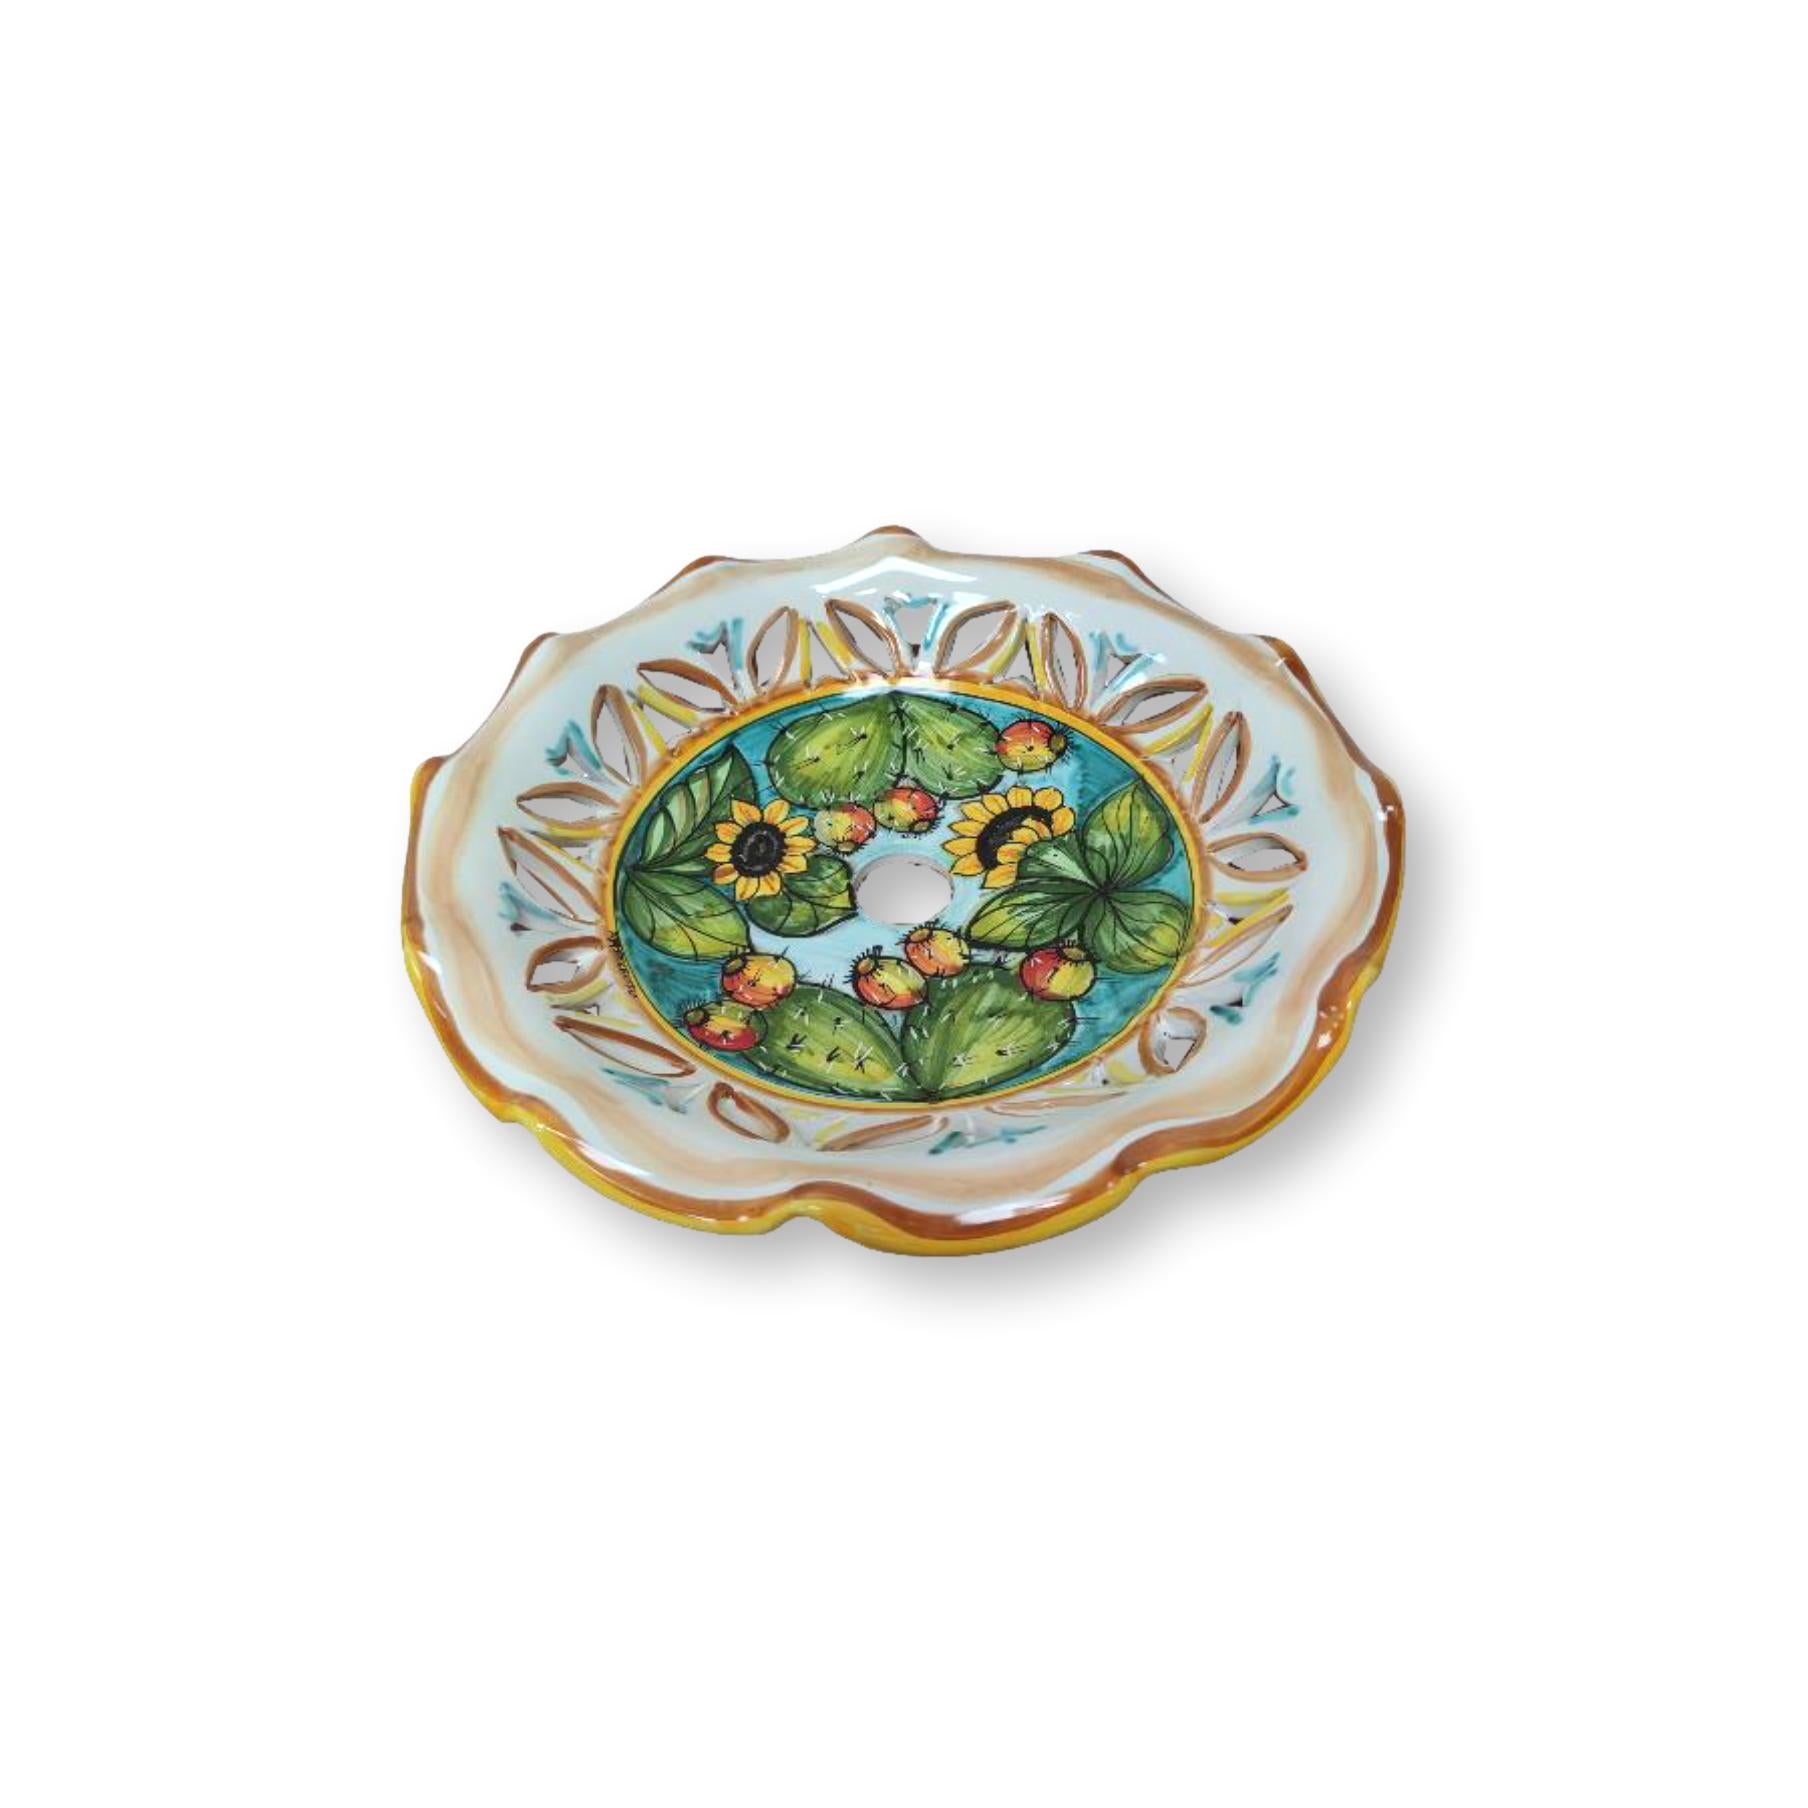 Lampadario in ceramica dipinto a mano - Ornato fichi d'india e girasoli